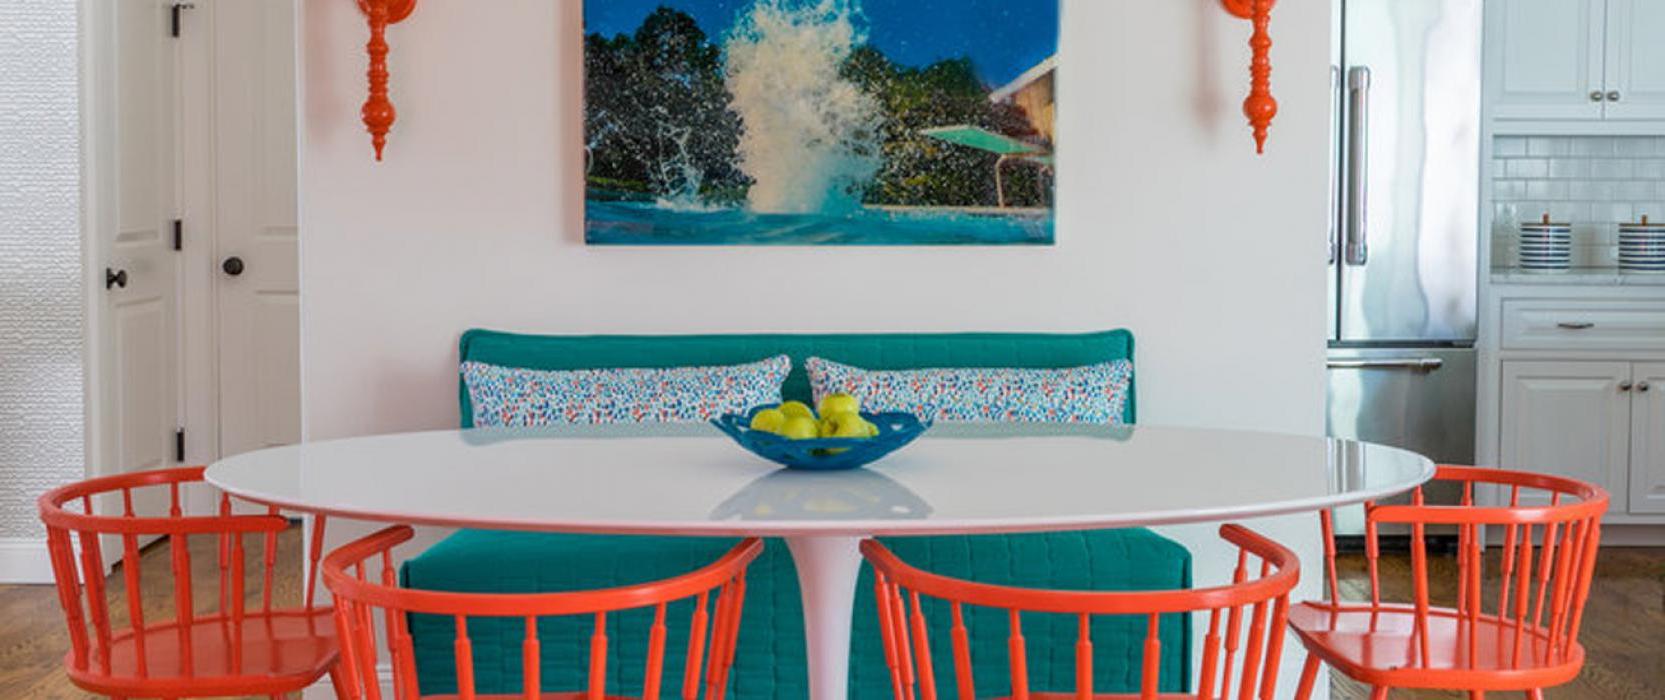 由玛莎葡萄园岛室内设计公司设计的彩色高端室内设计